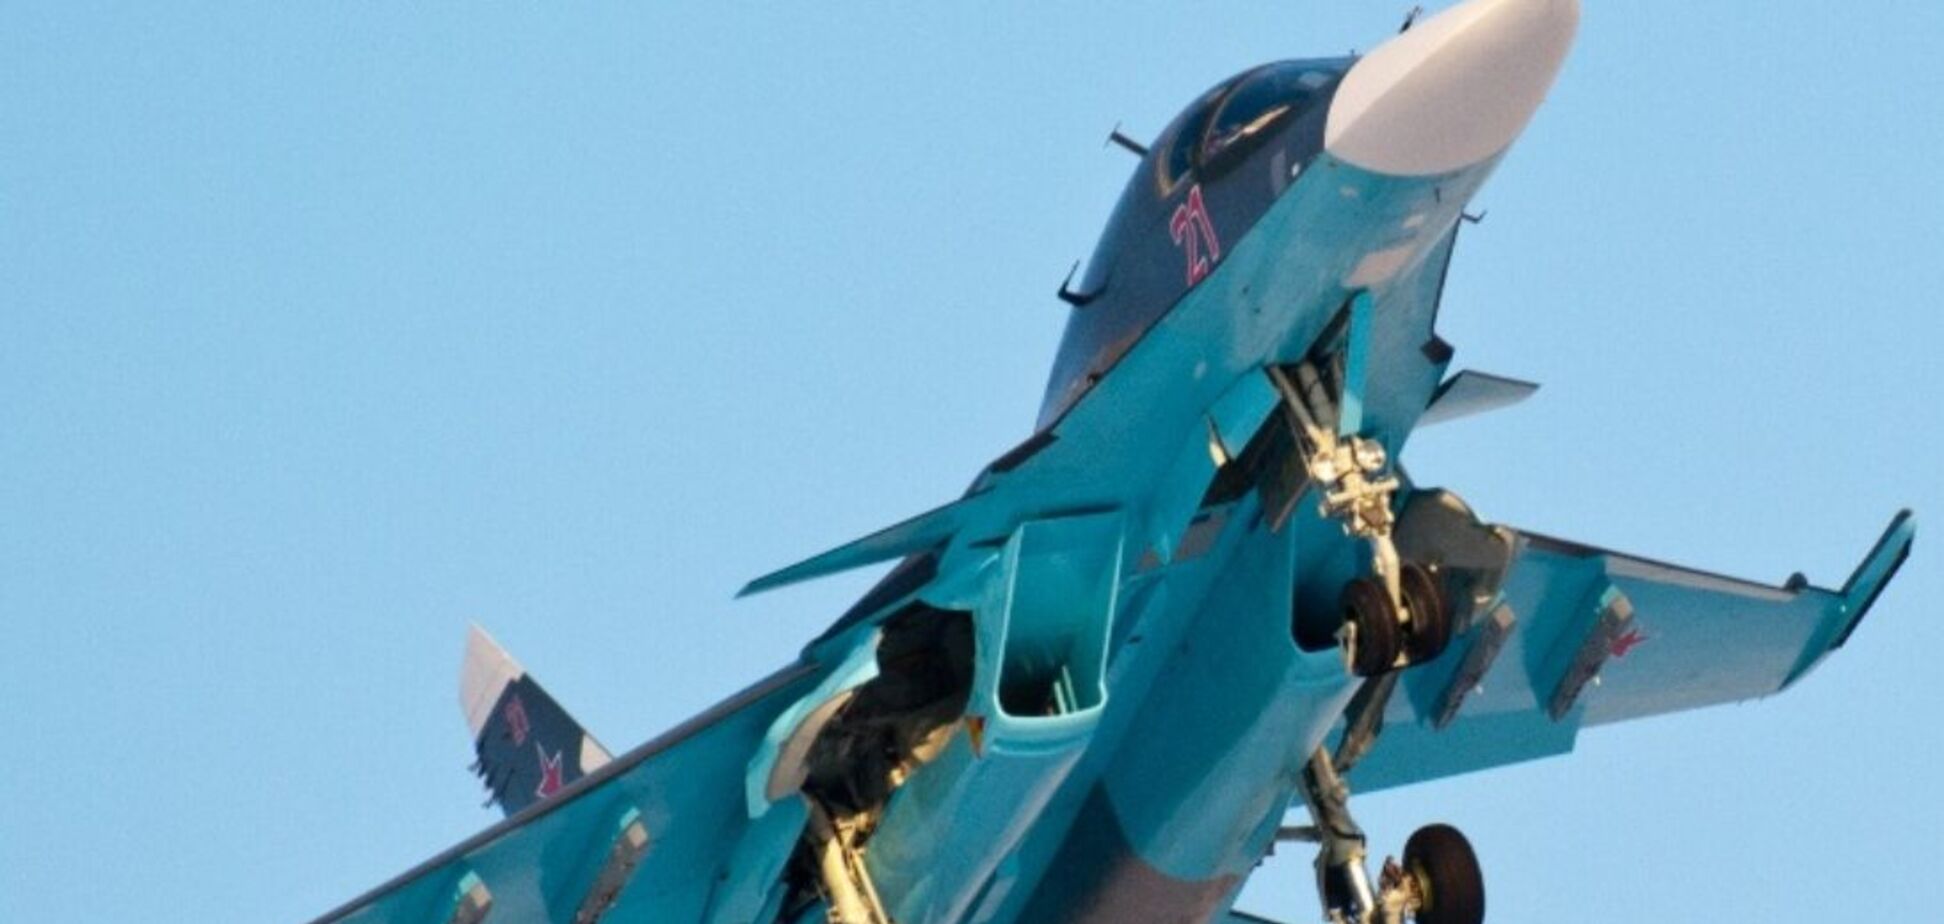 Выполнял боевое задание на Белгородщине: появились подробности о потере россиянами самолета Су-34